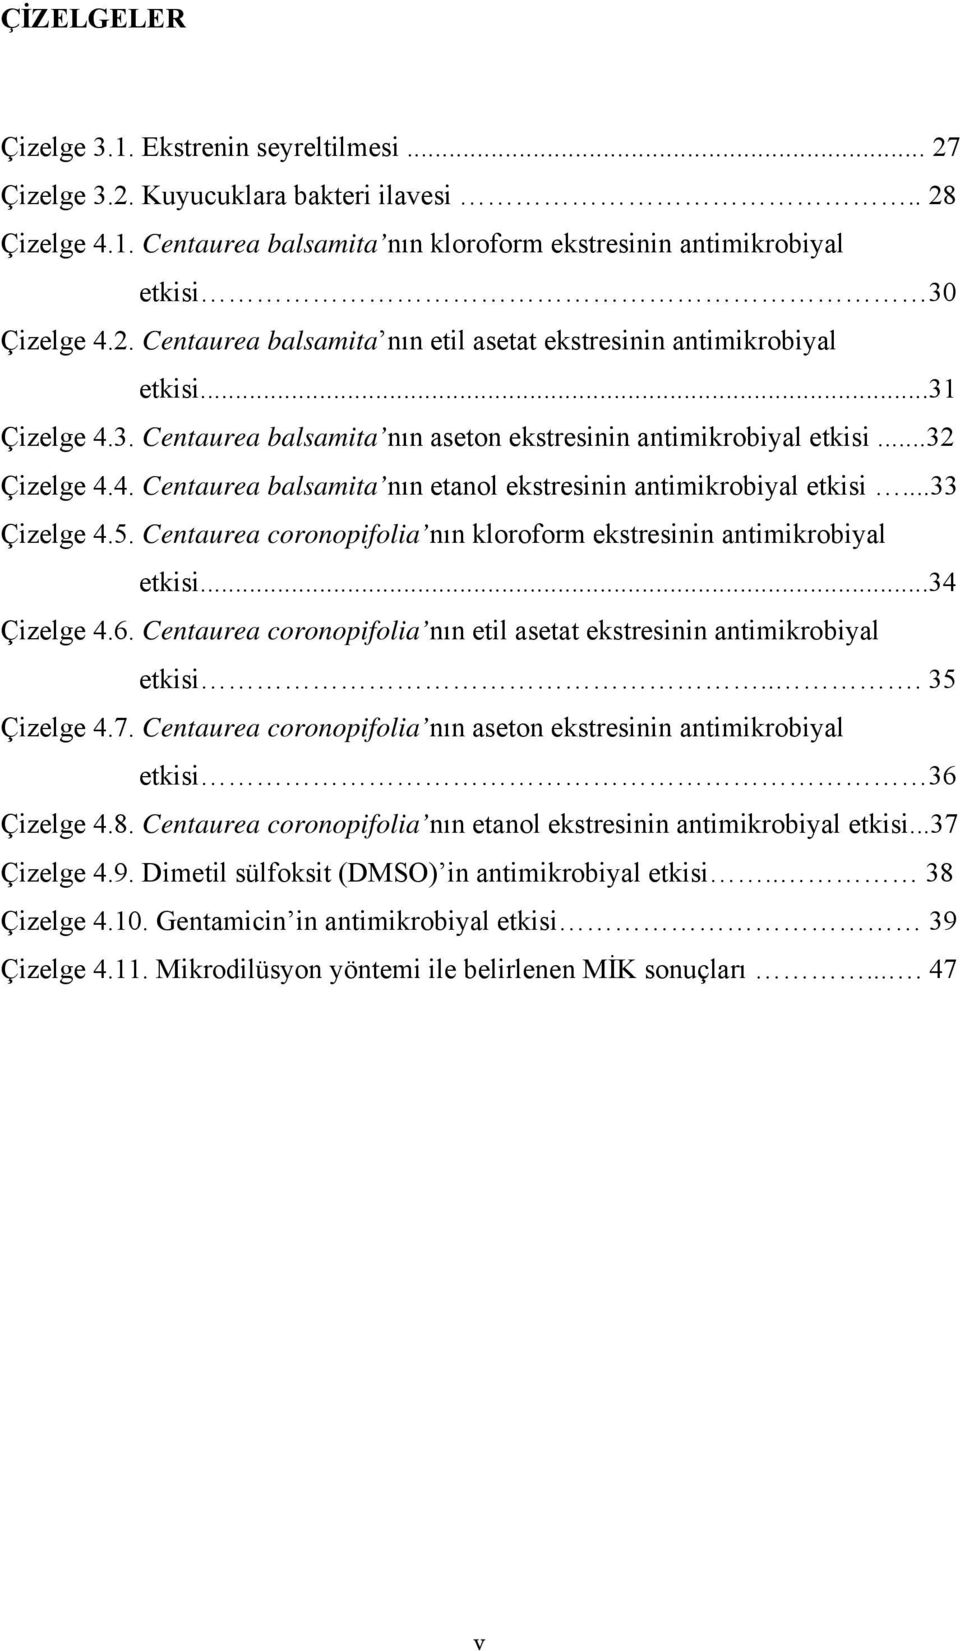 Centaurea coronopifolia nın kloroform ekstresinin antimikrobiyal etkisi...34 Çizelge 4.6. Centaurea coronopifolia nın etil asetat ekstresinin antimikrobiyal etkisi... 35 Çizelge 4.7.